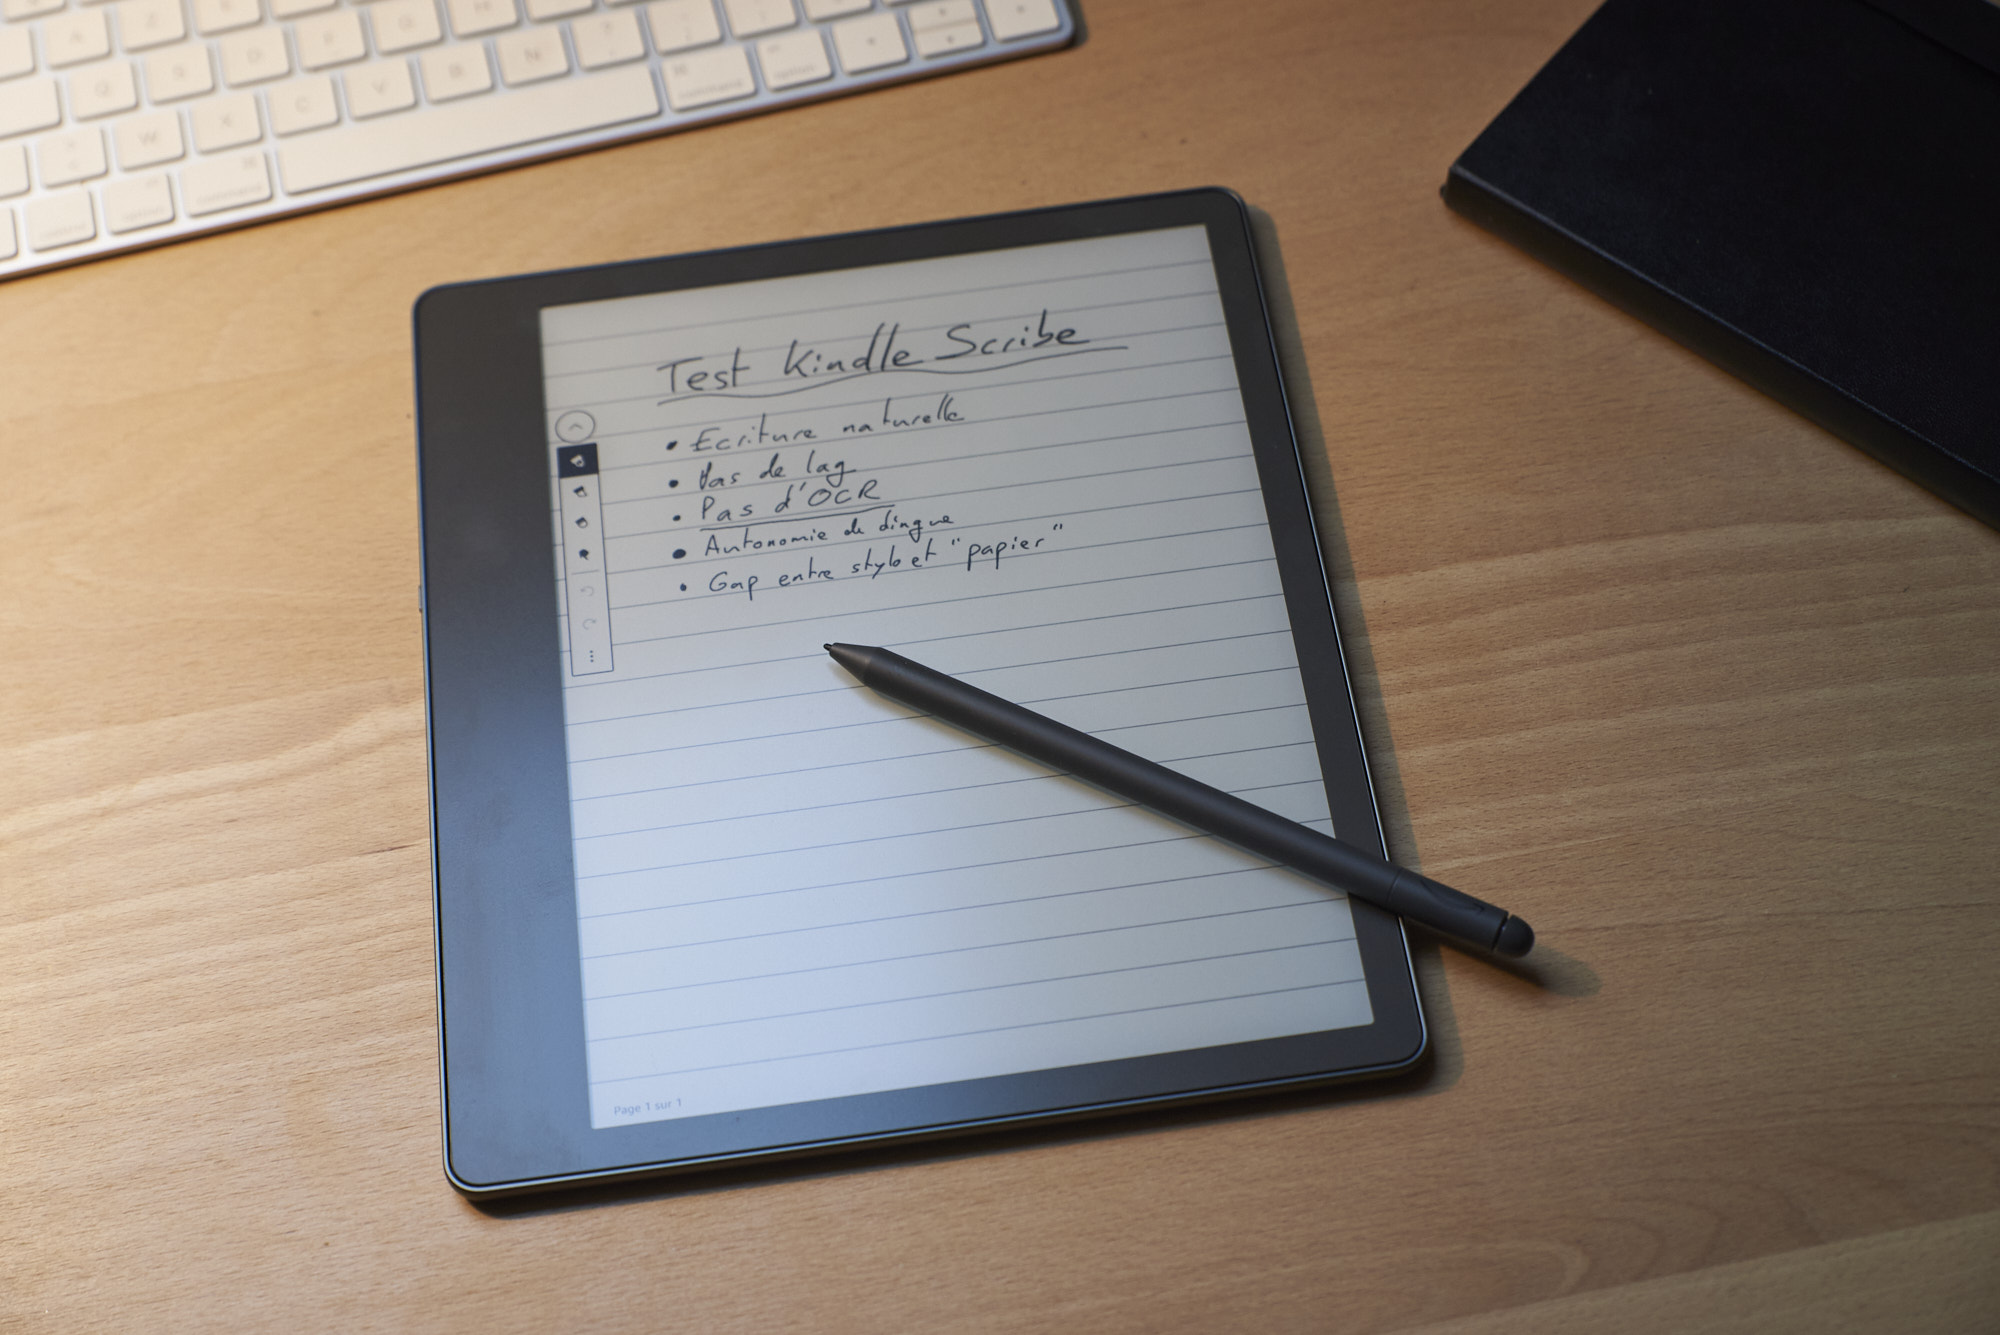 Le Kindle Scribe permet enfin de convertir l'écriture manuscrite